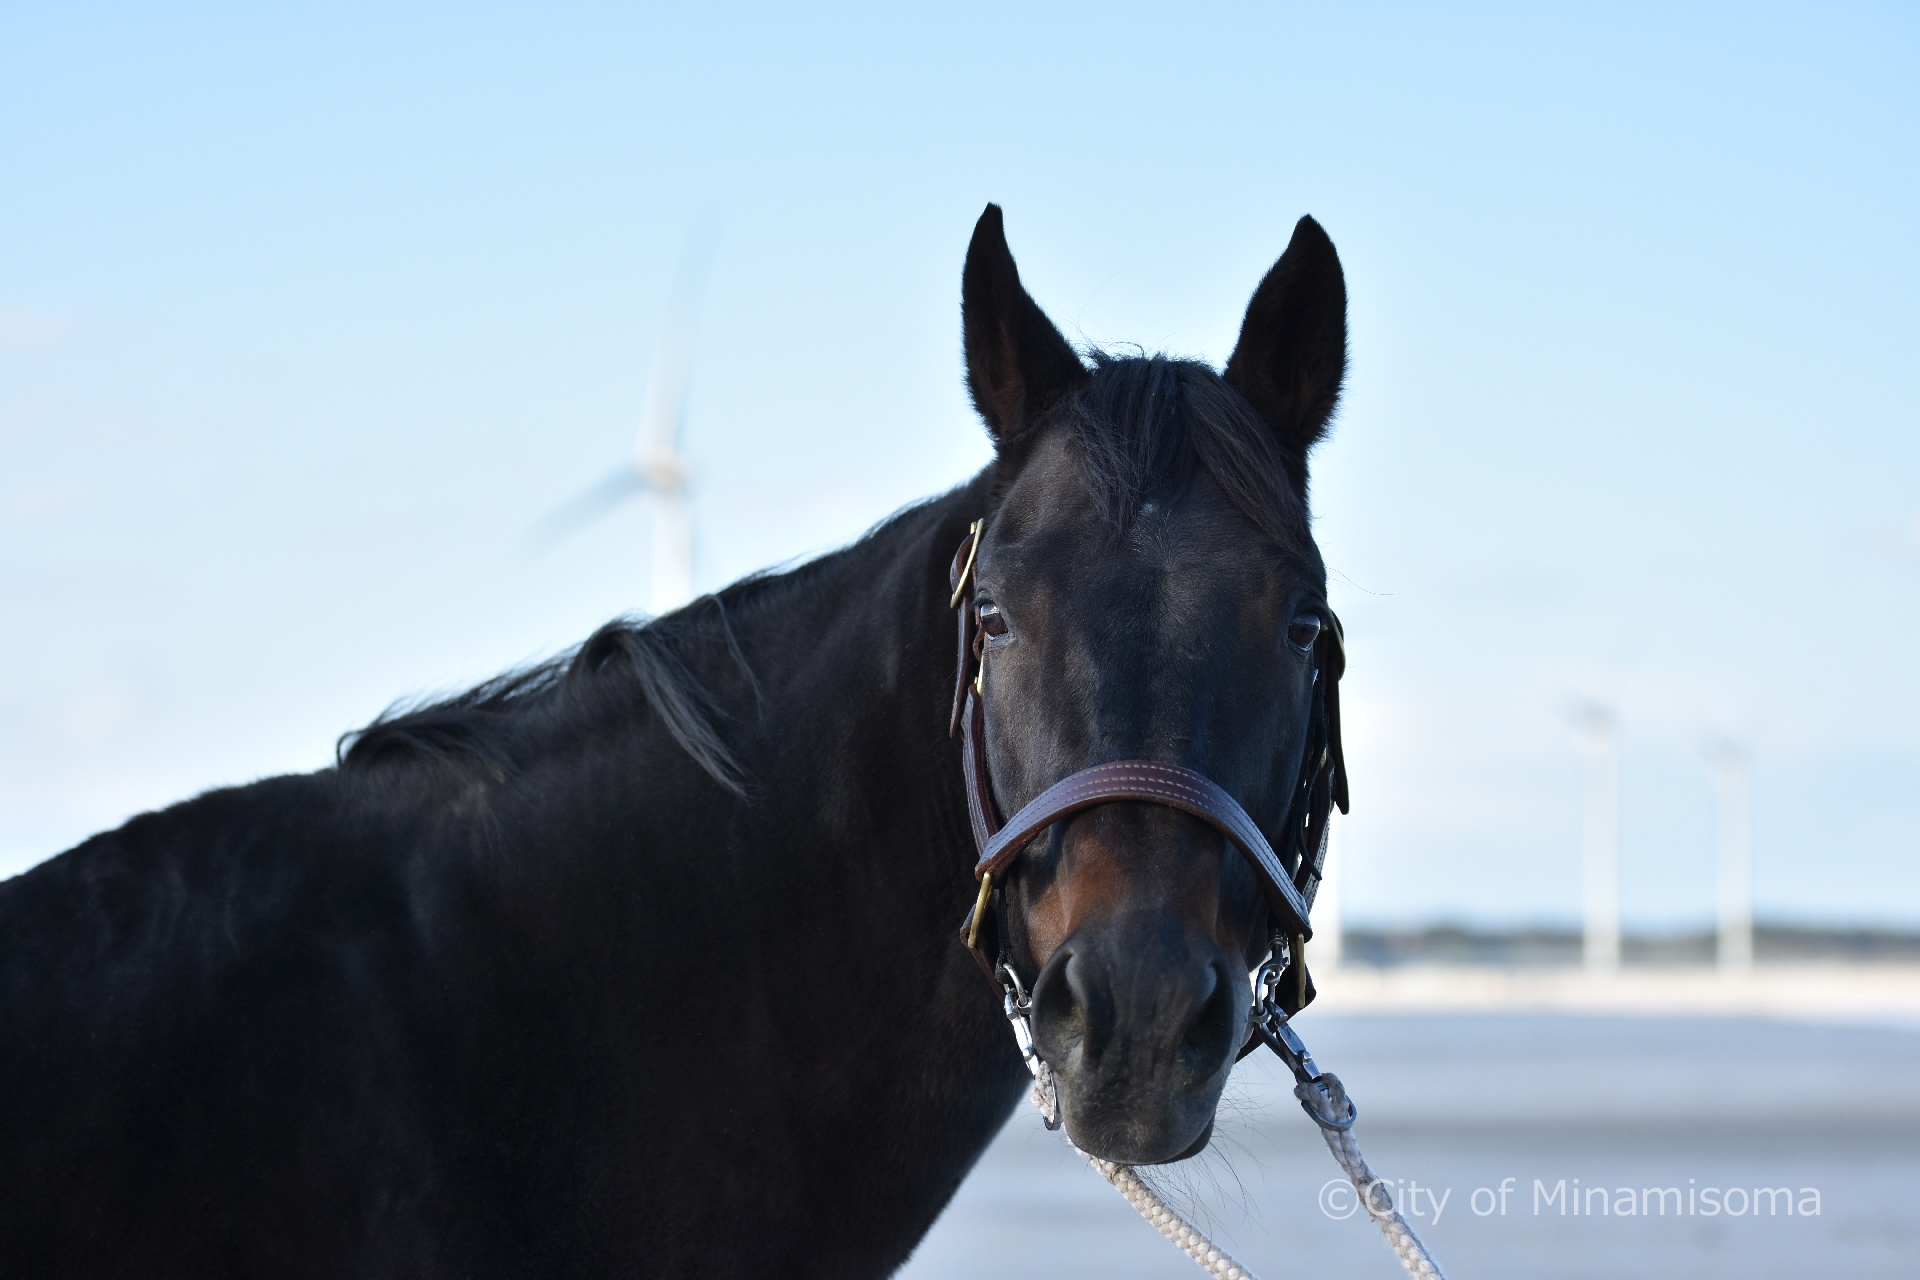 鹿島区烏崎の海で、黒い馬がこちらを向いている様子。その背後には、薄青い空が見え、風車が回っている。